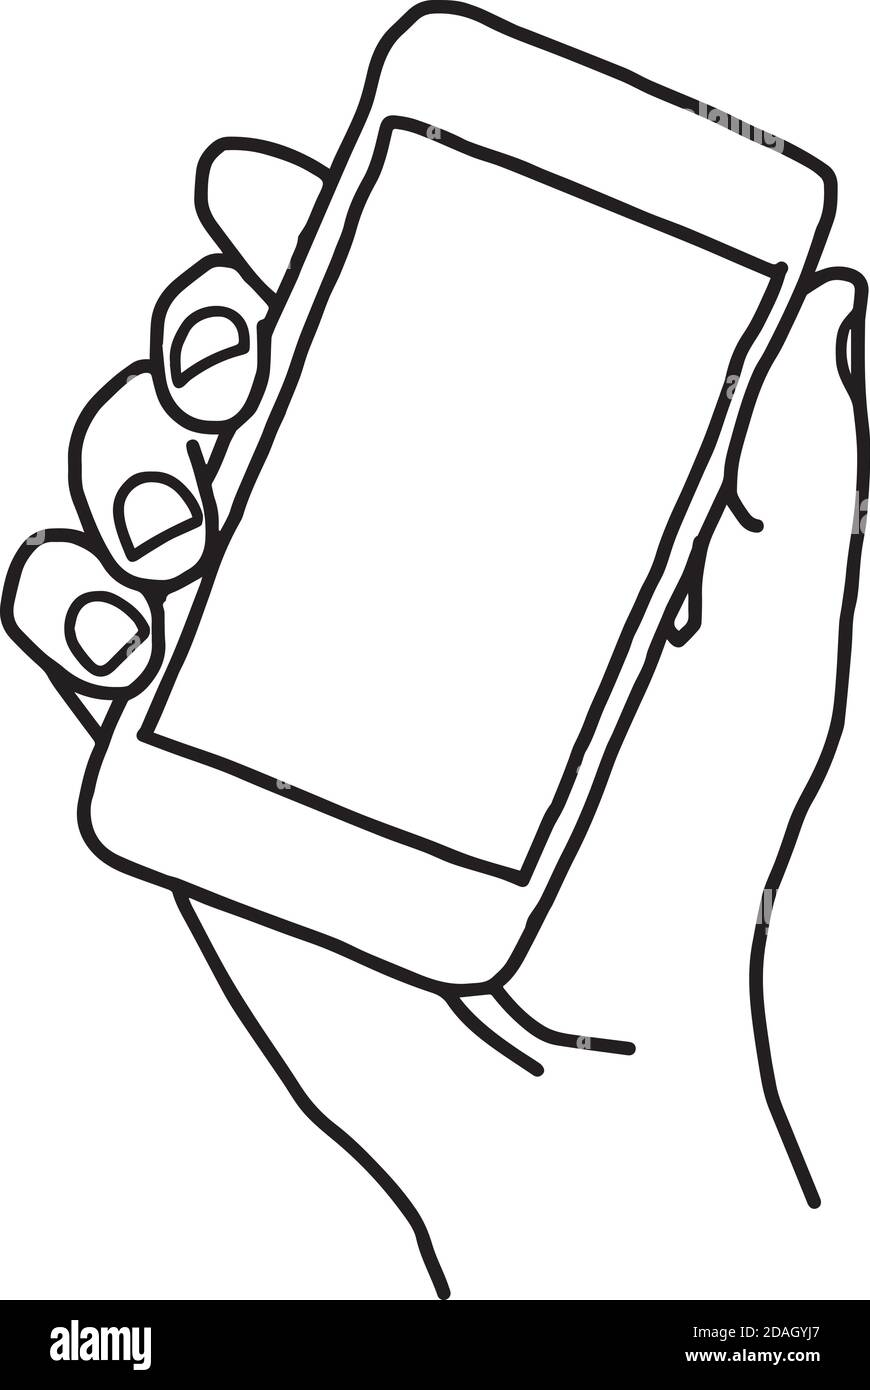 dessin de la main droite de la main droite de la main droite de l'homme téléphone portable intelligent Illustration de Vecteur